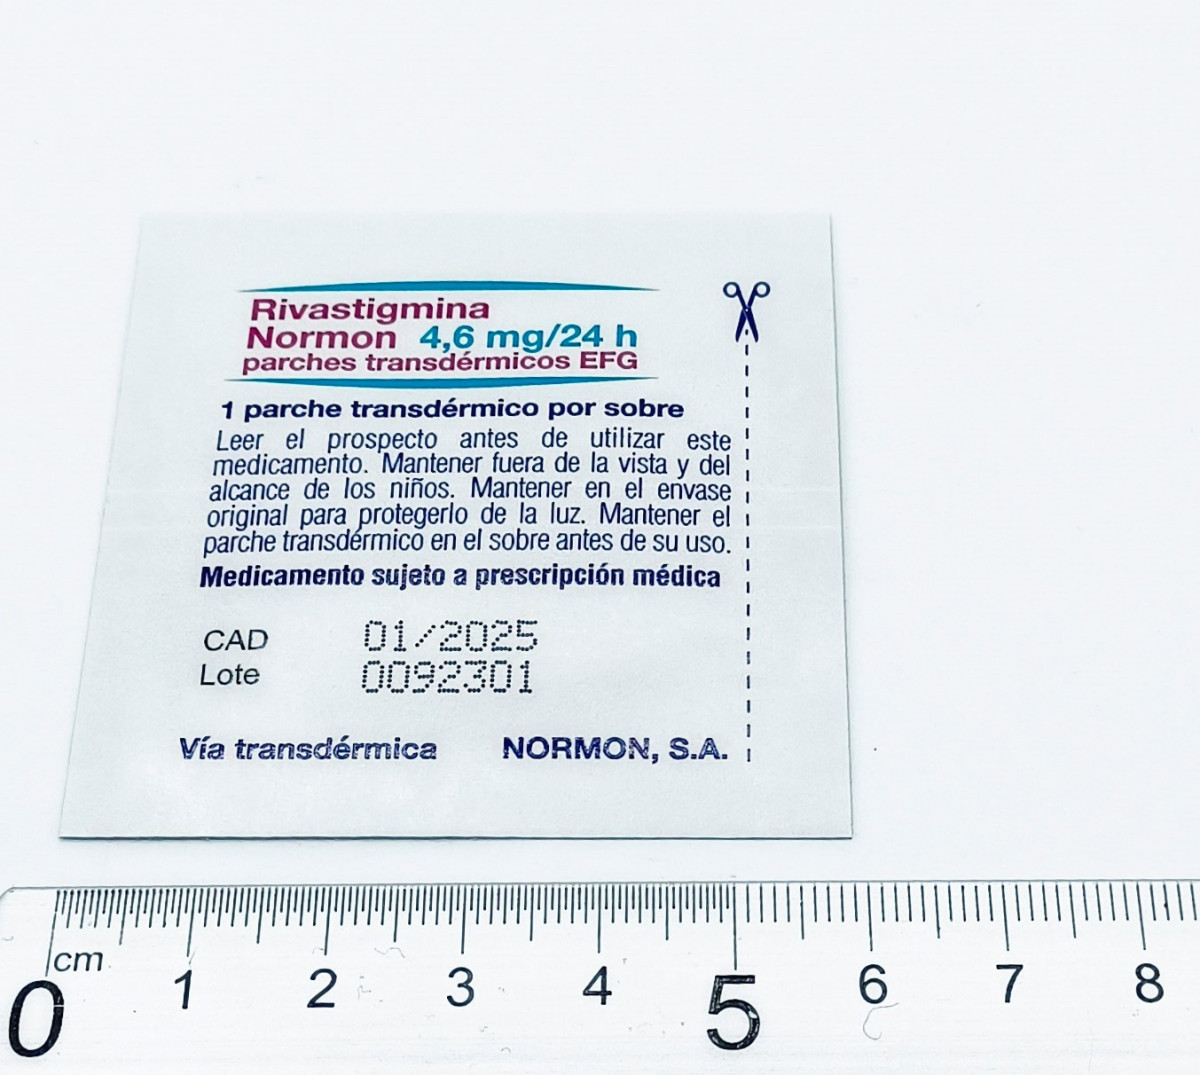 RIVASTIGMINA NORMON 4,6 MG/24 H PARCHES TRANSDERMICOS EFG, 60 parches transdérmicos fotografía de la forma farmacéutica.